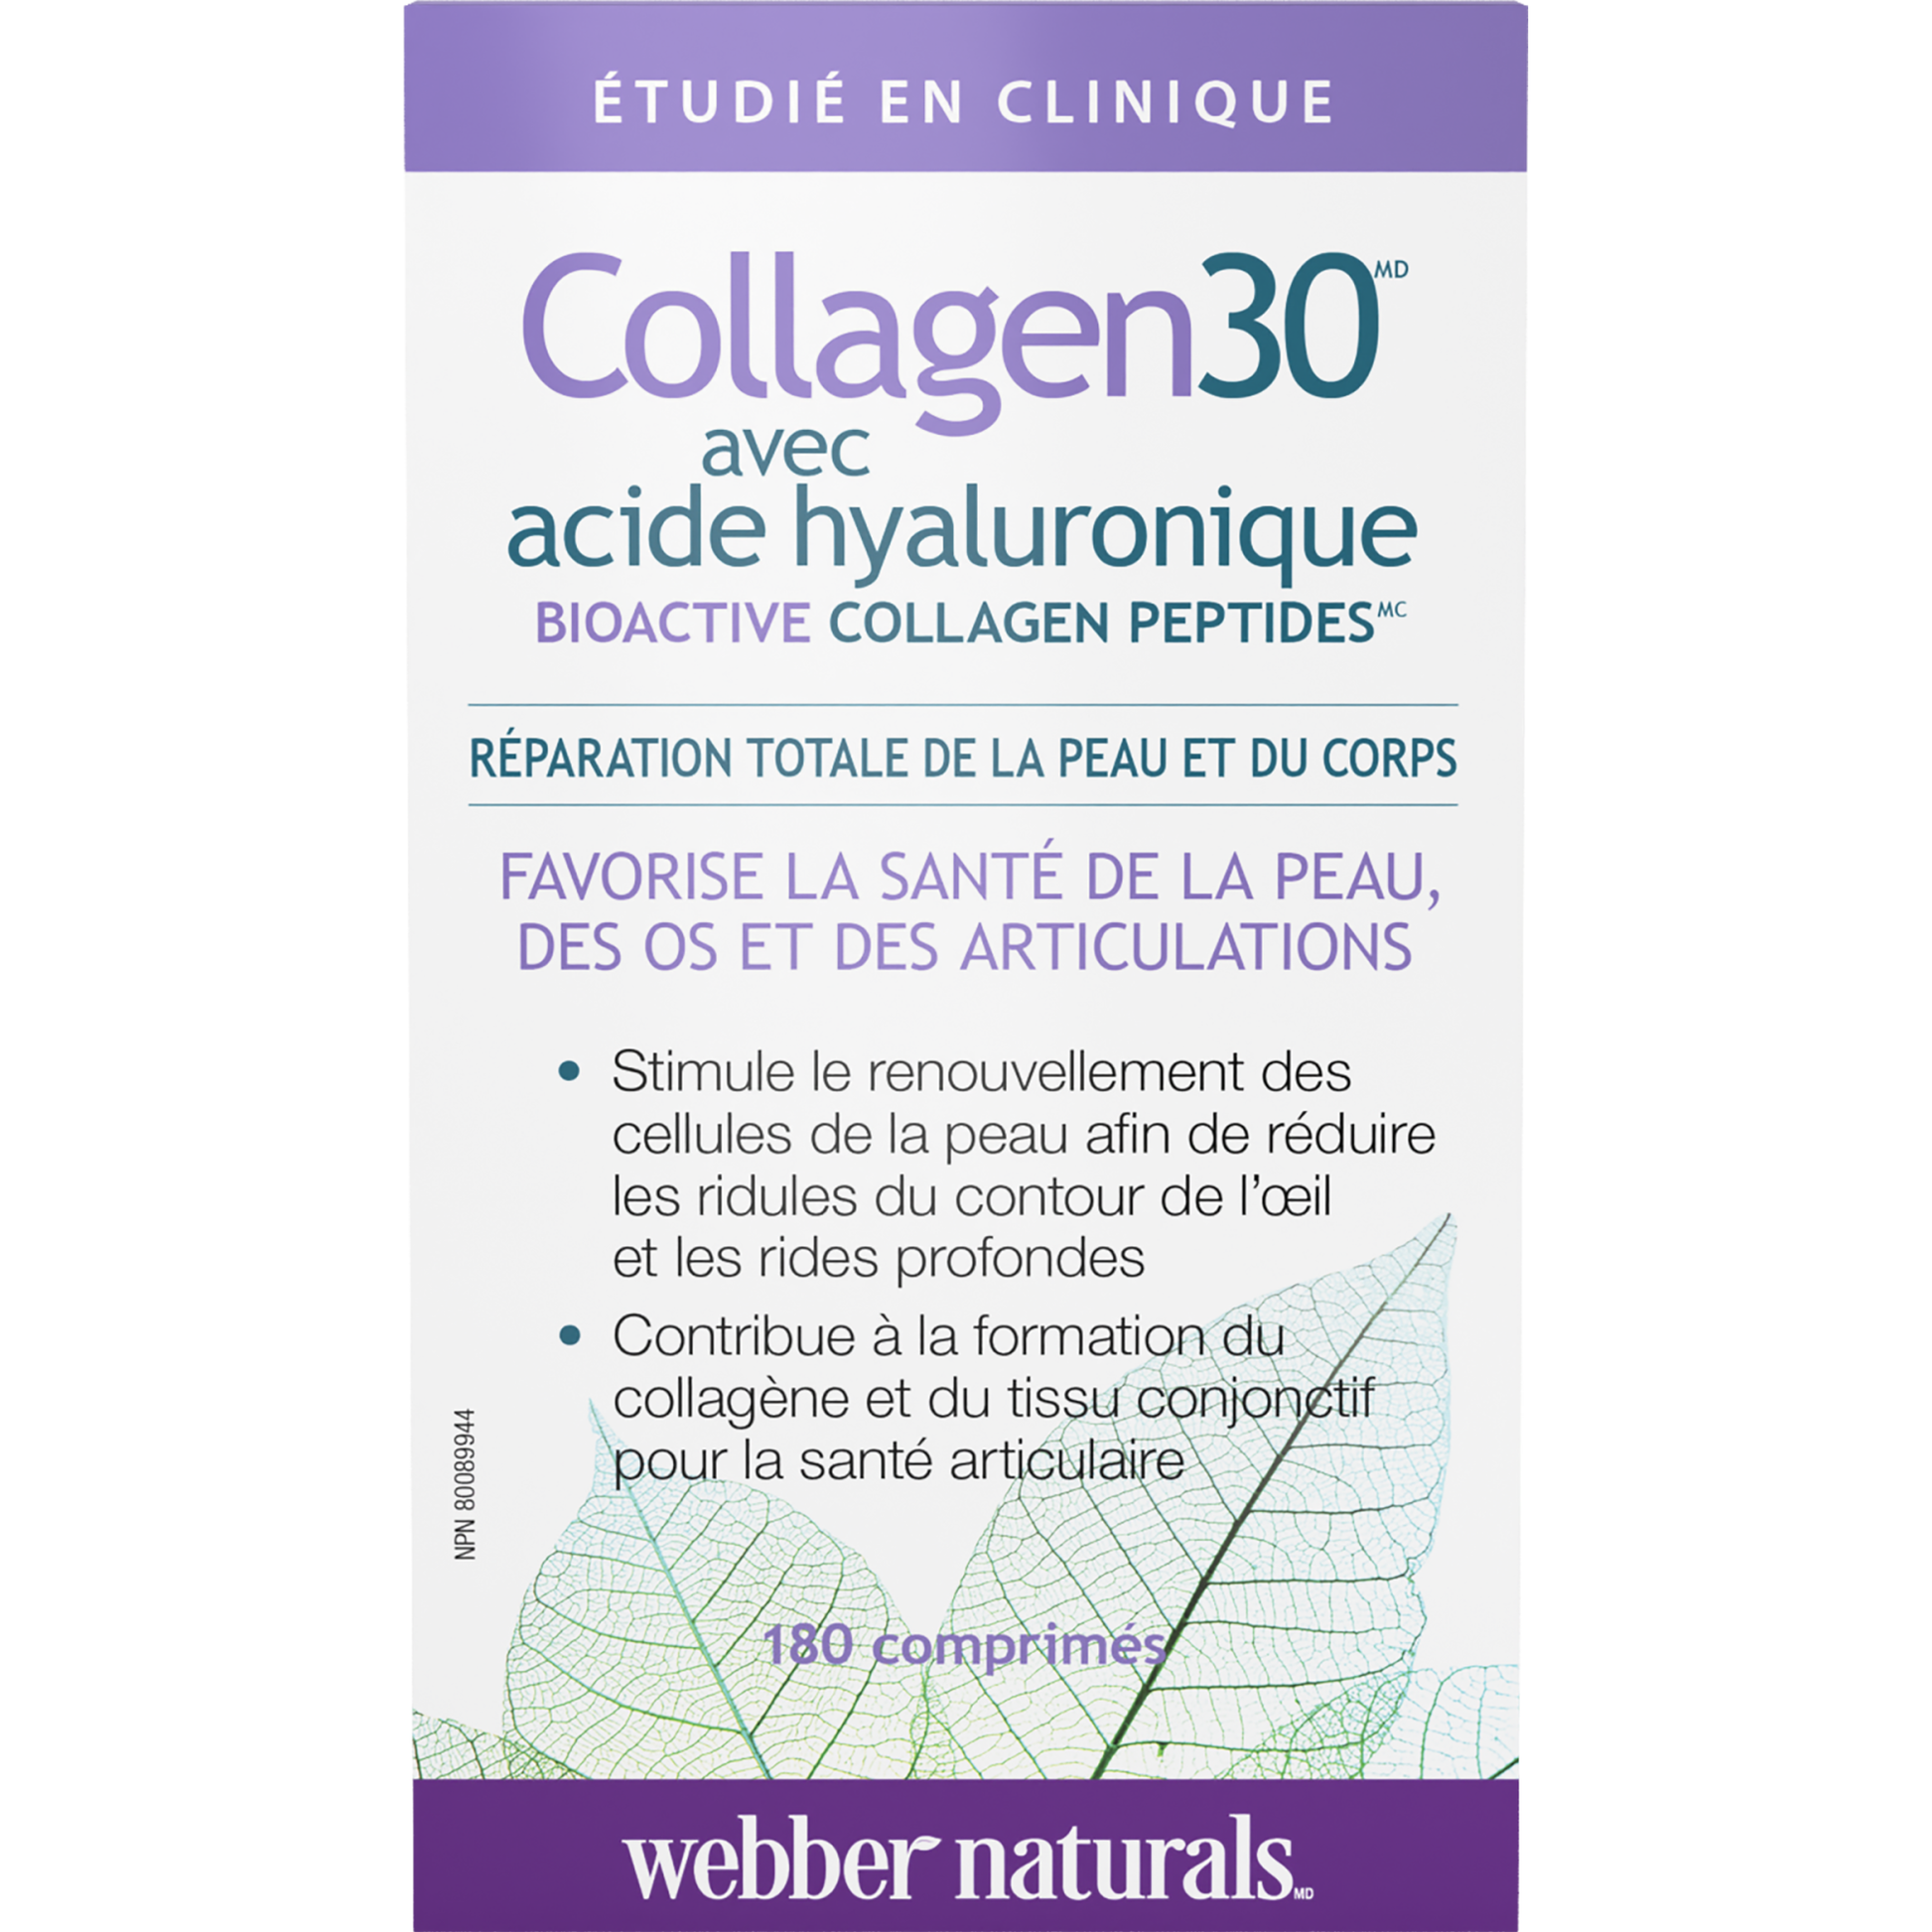 Collagen30 acide hyaluronique Bioactive Collagen Peptides for Webber Naturals|v|hi-res|WN3664